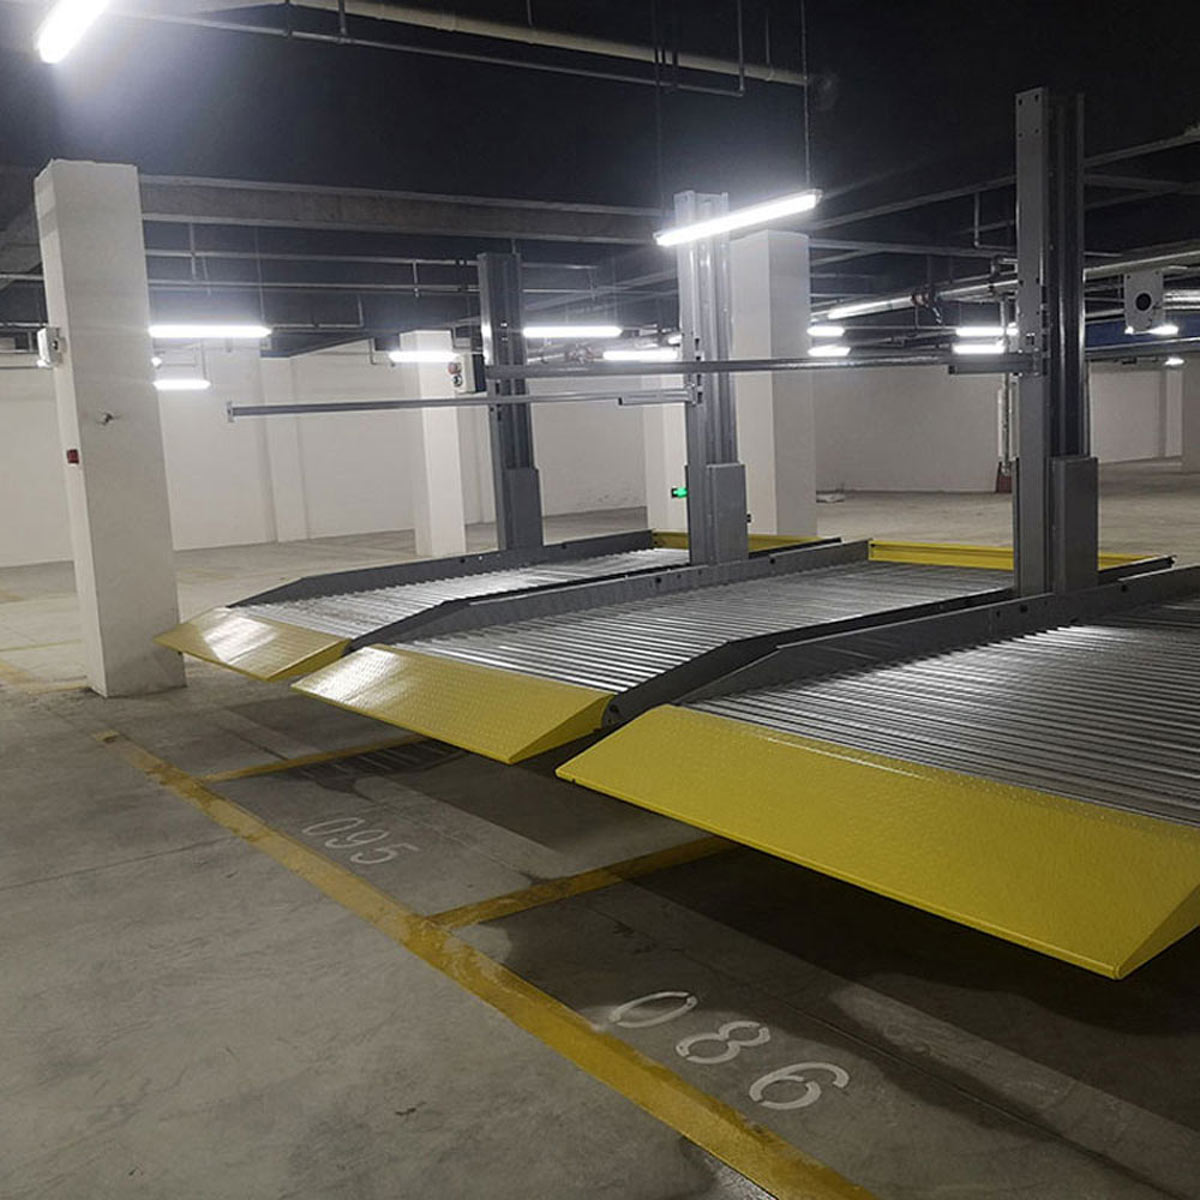 延安立體停車庫改善區域停車四種解決模式